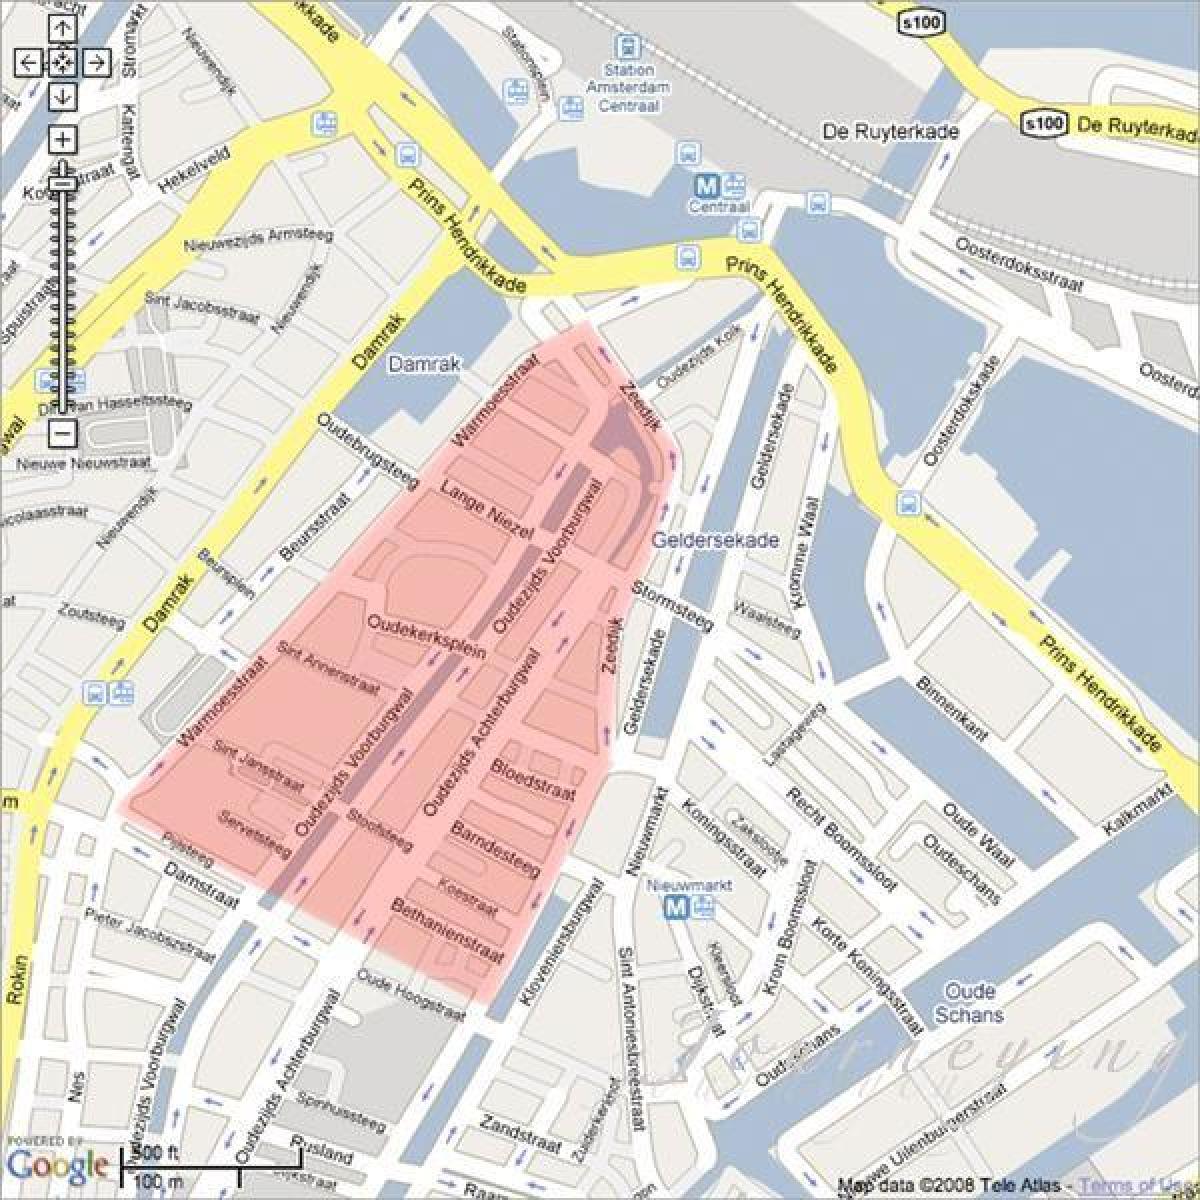 Harta e Vjenës red light district